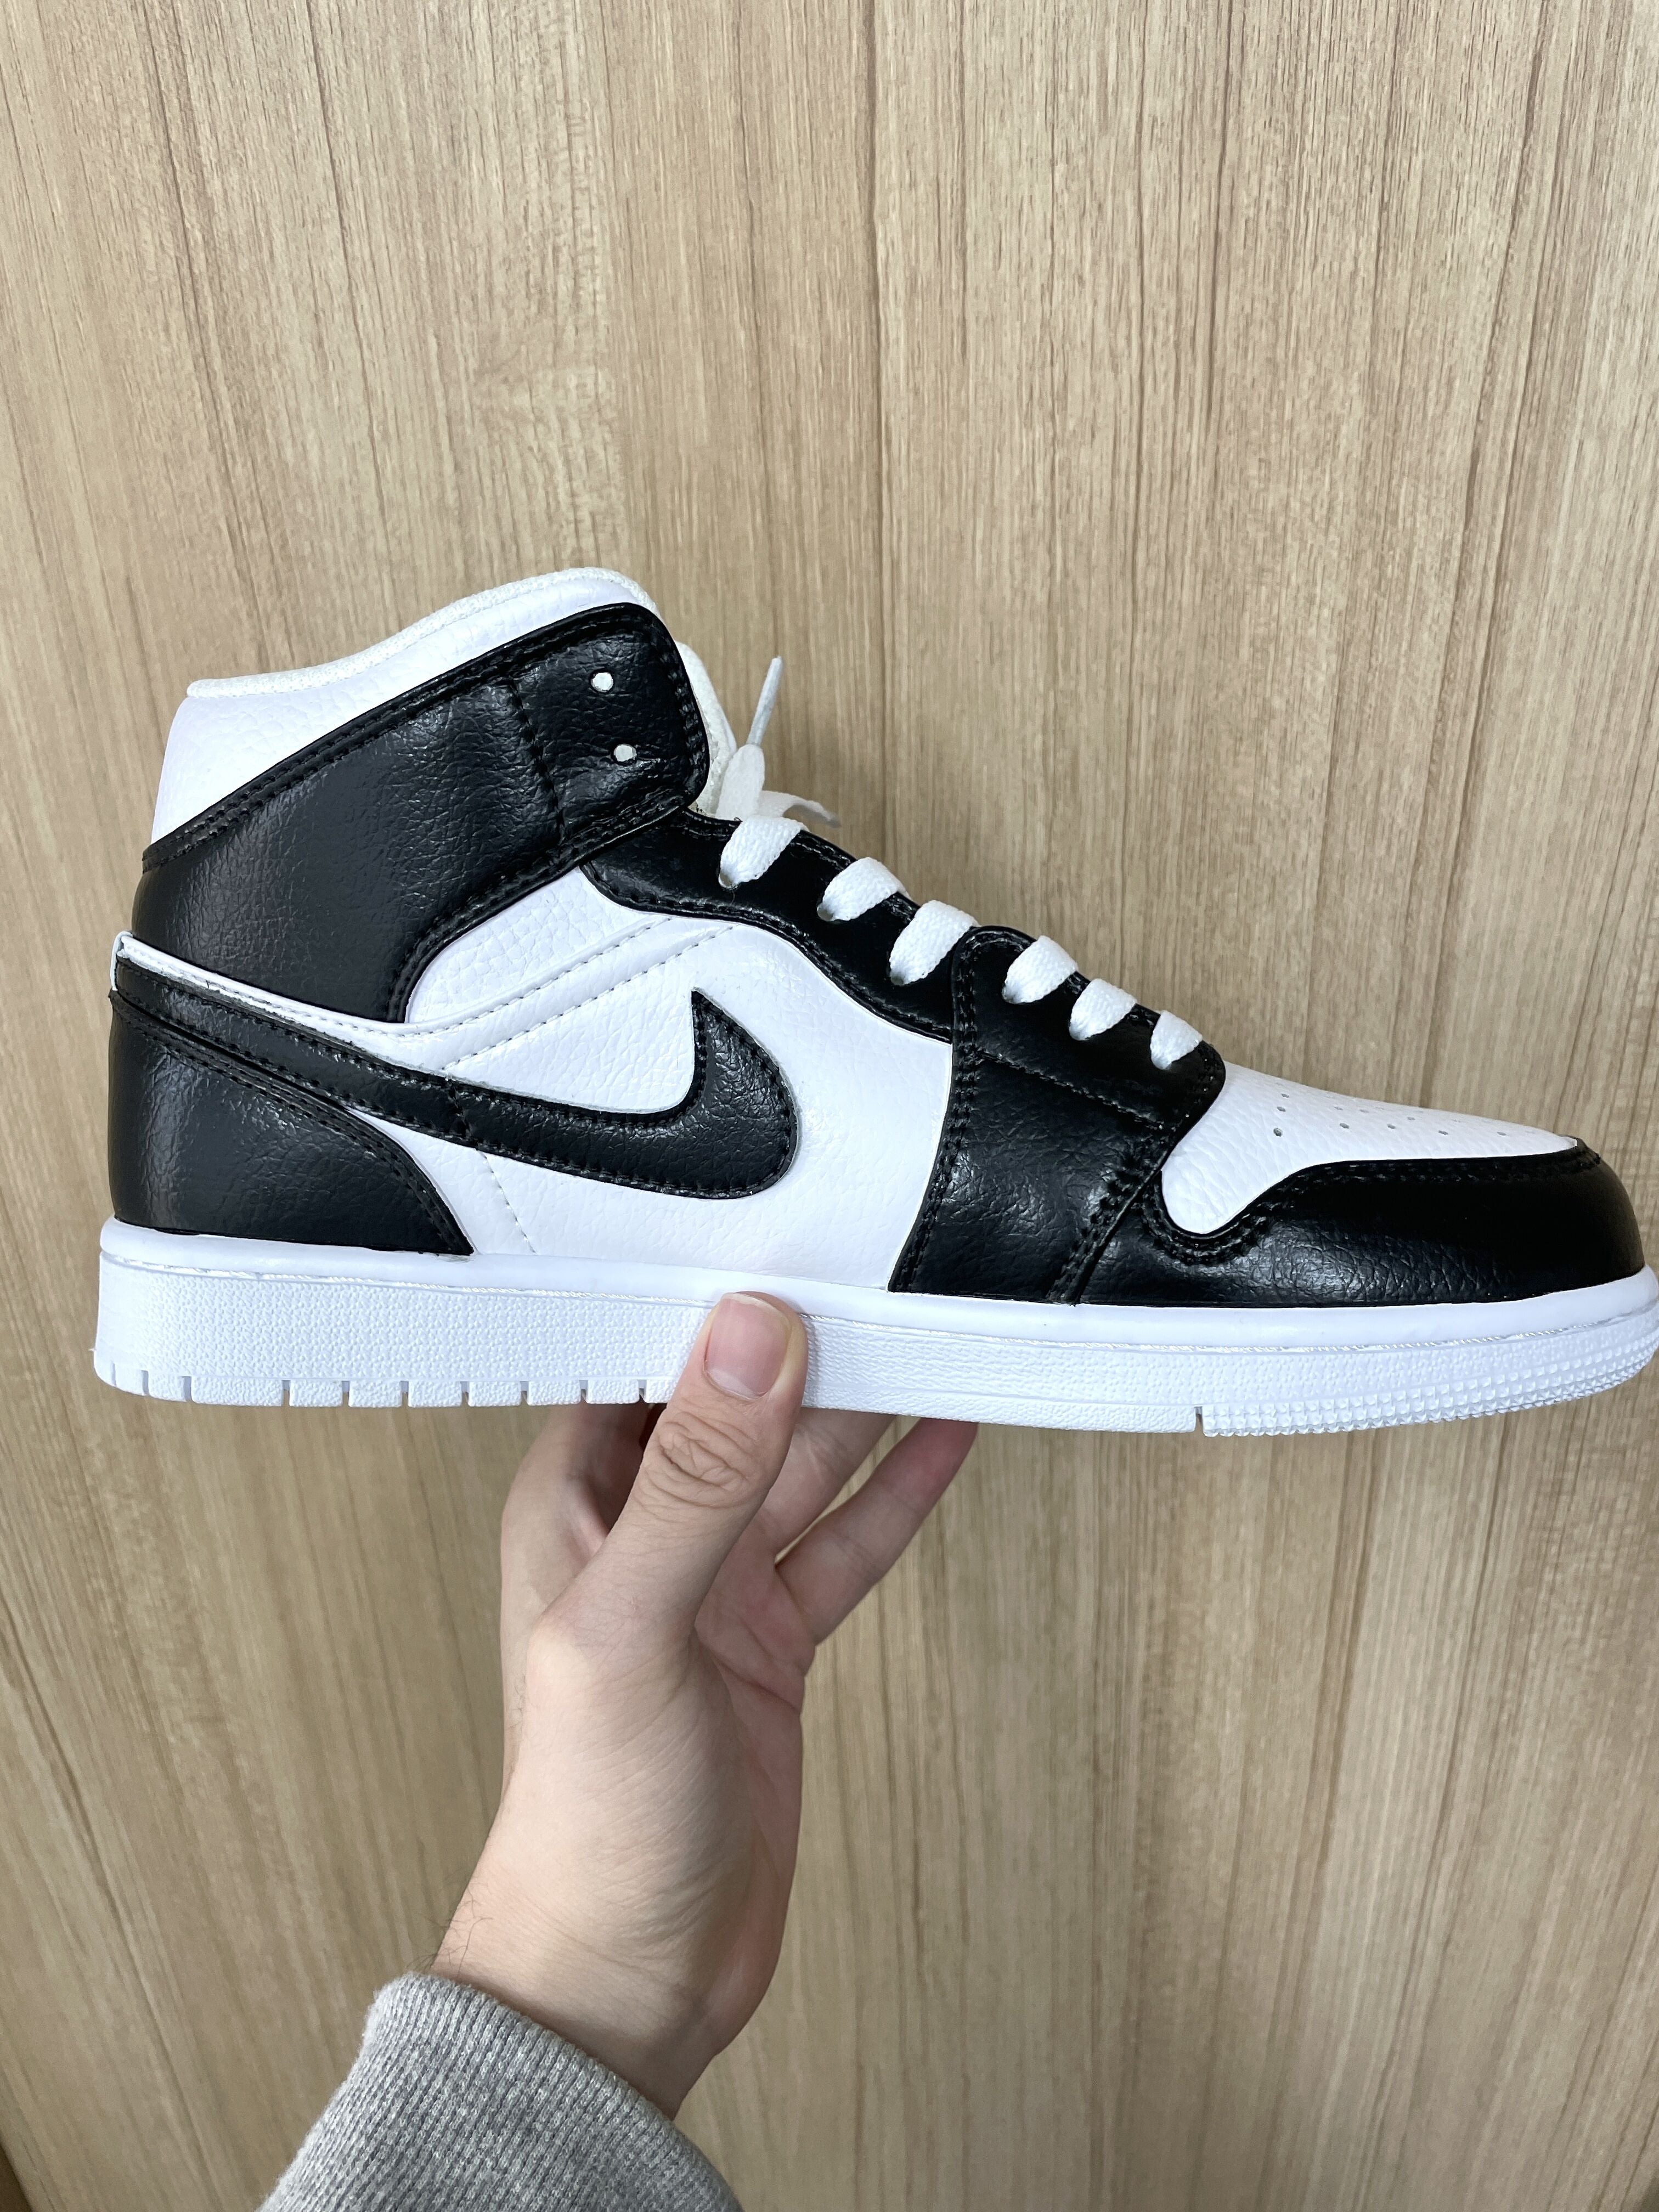 Custom Jordan 1 black